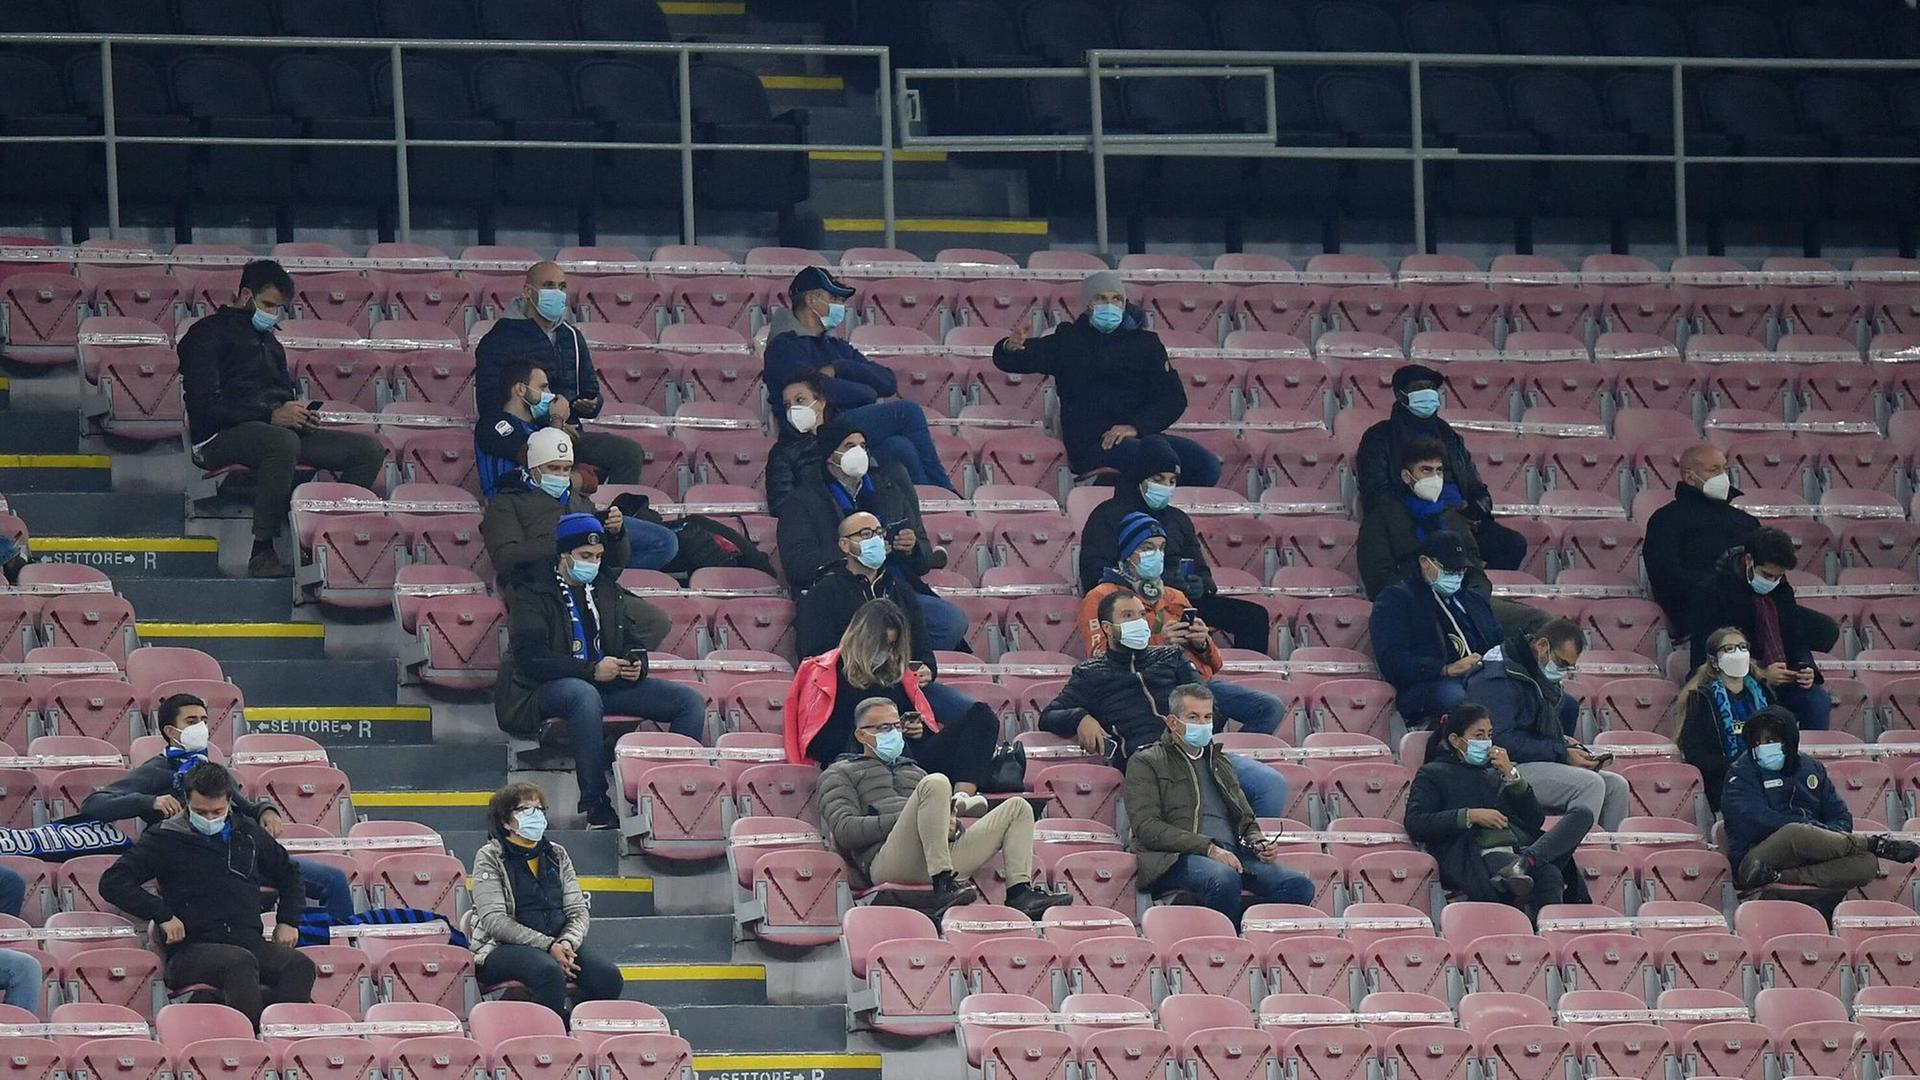 Einige wenige Zuschauer im San Siro Stadion in Mailand beim Spiel gegen Mönchengladbach im Oktober 2020 mit Abstand und Mund-Nasenschutz.